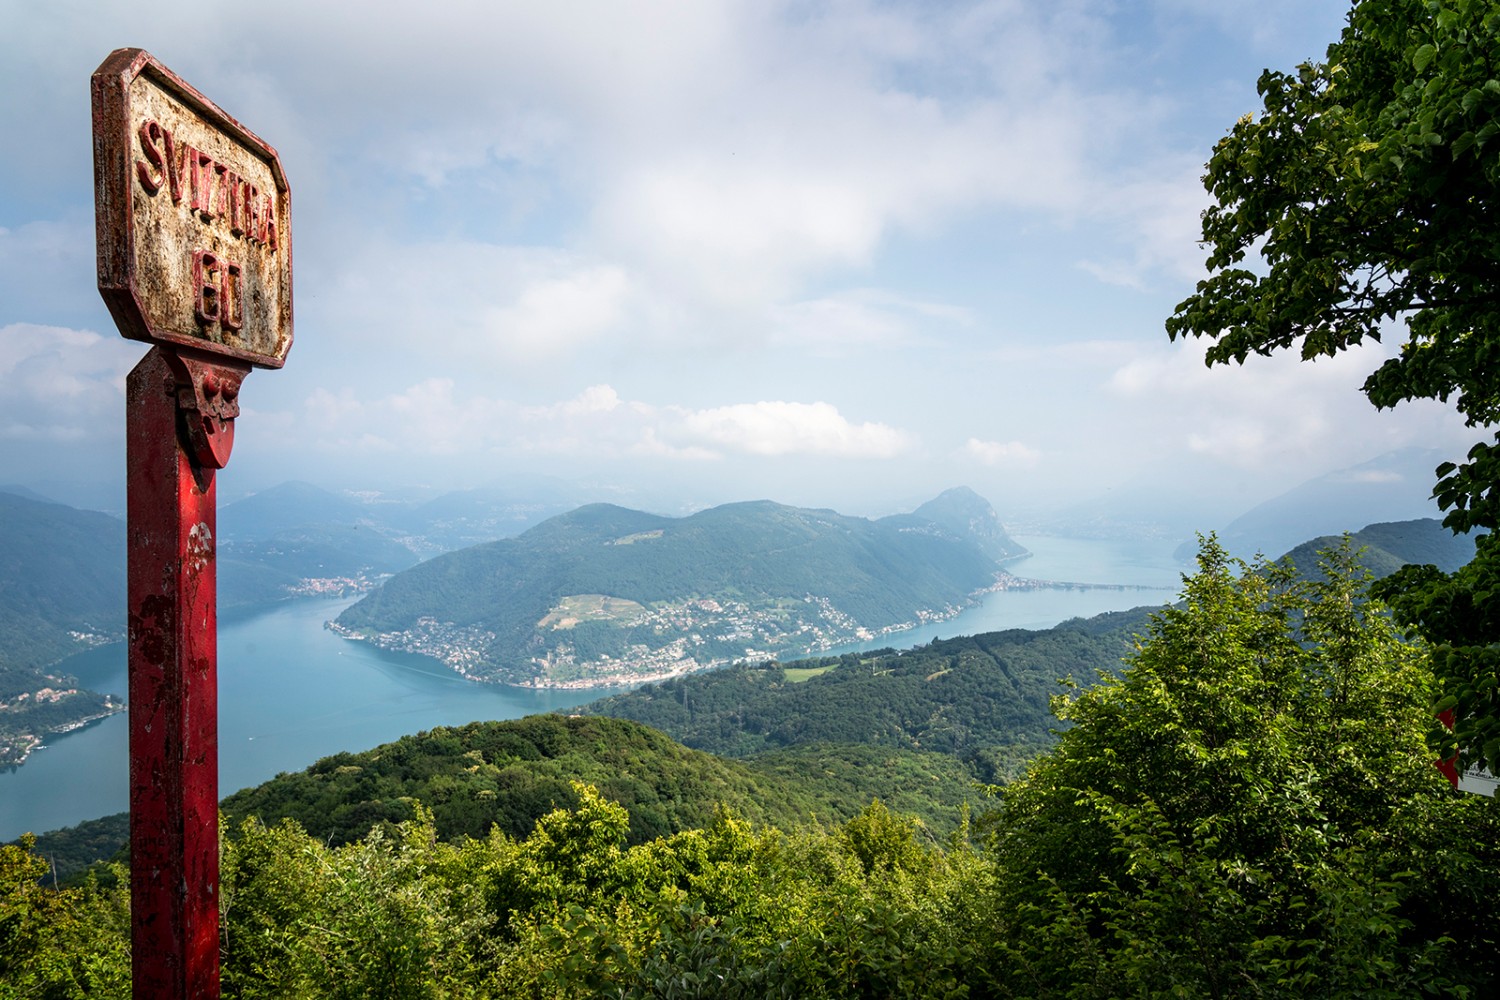 Vue du Poncione d’Arzo sur le lac de Lugano. Photos: Severin Nowacki
